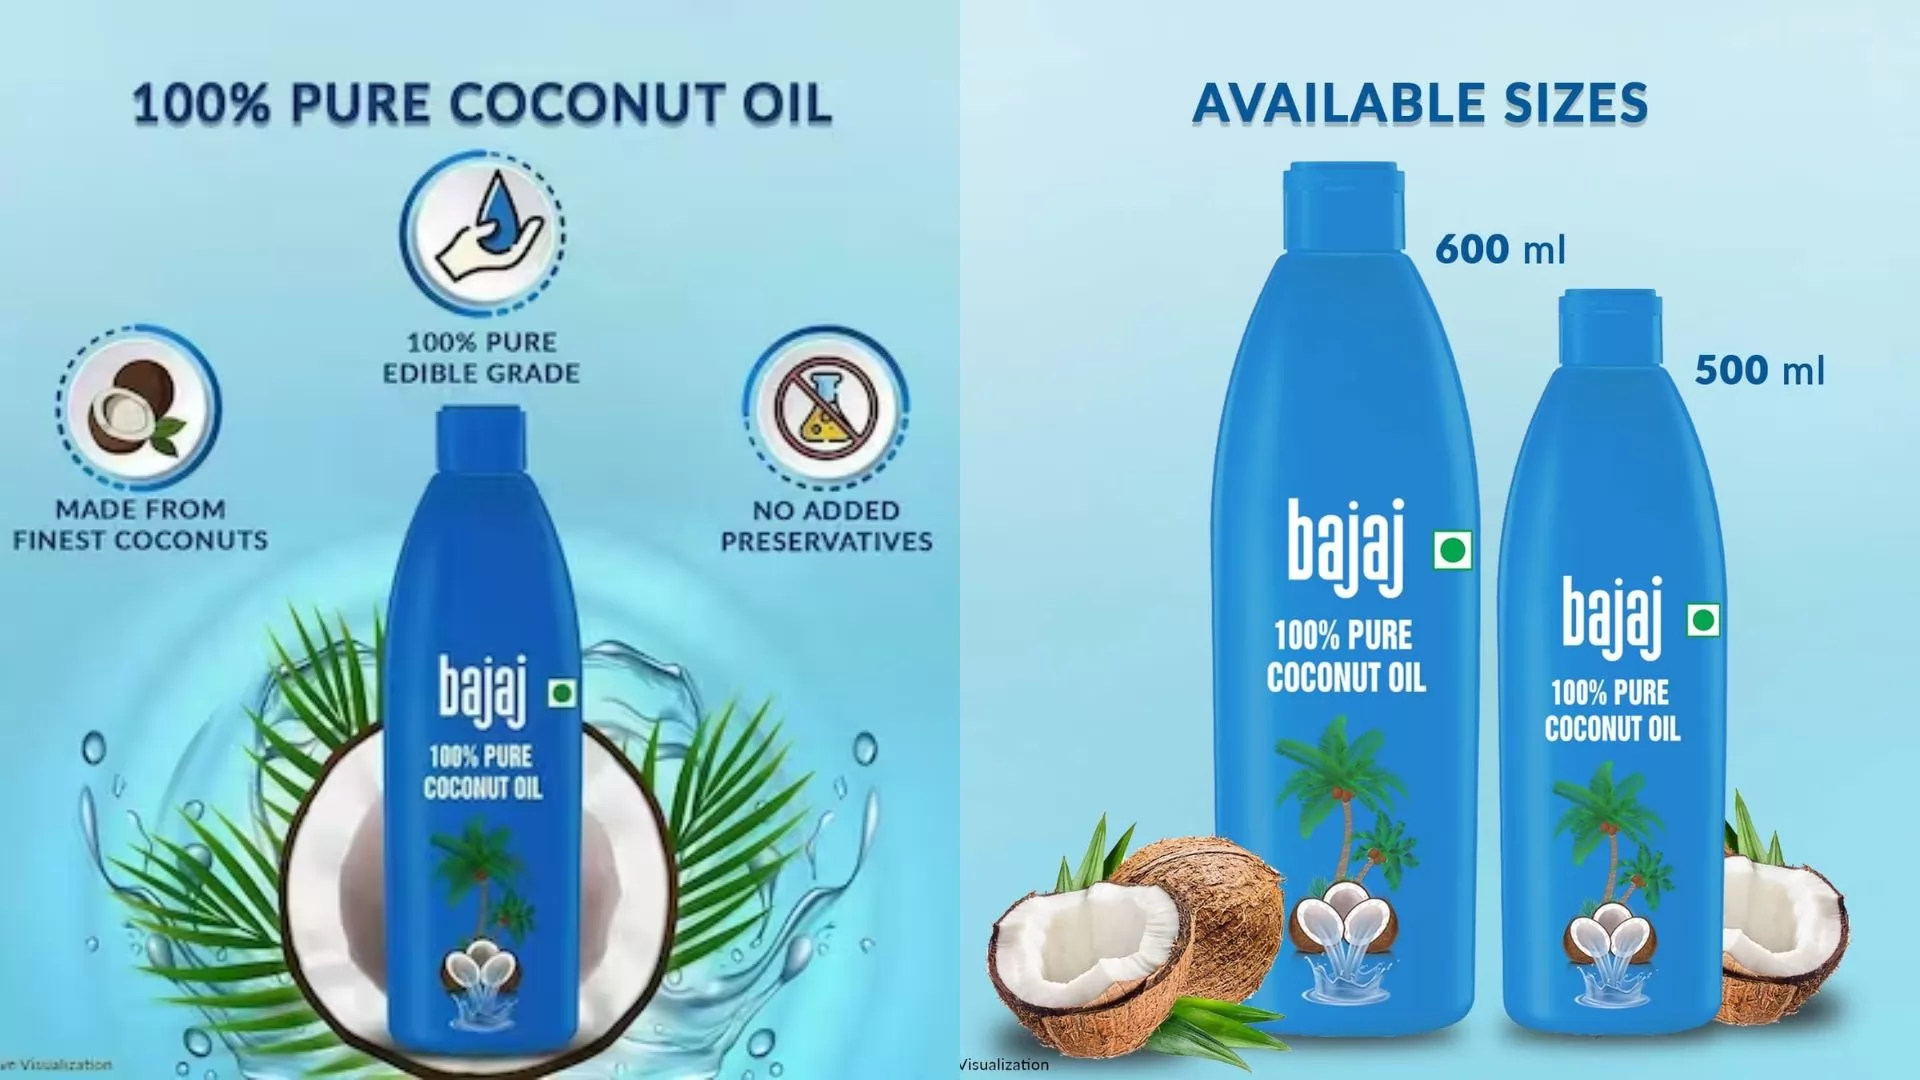 Bajaj 100% Pure Coconut Oil 